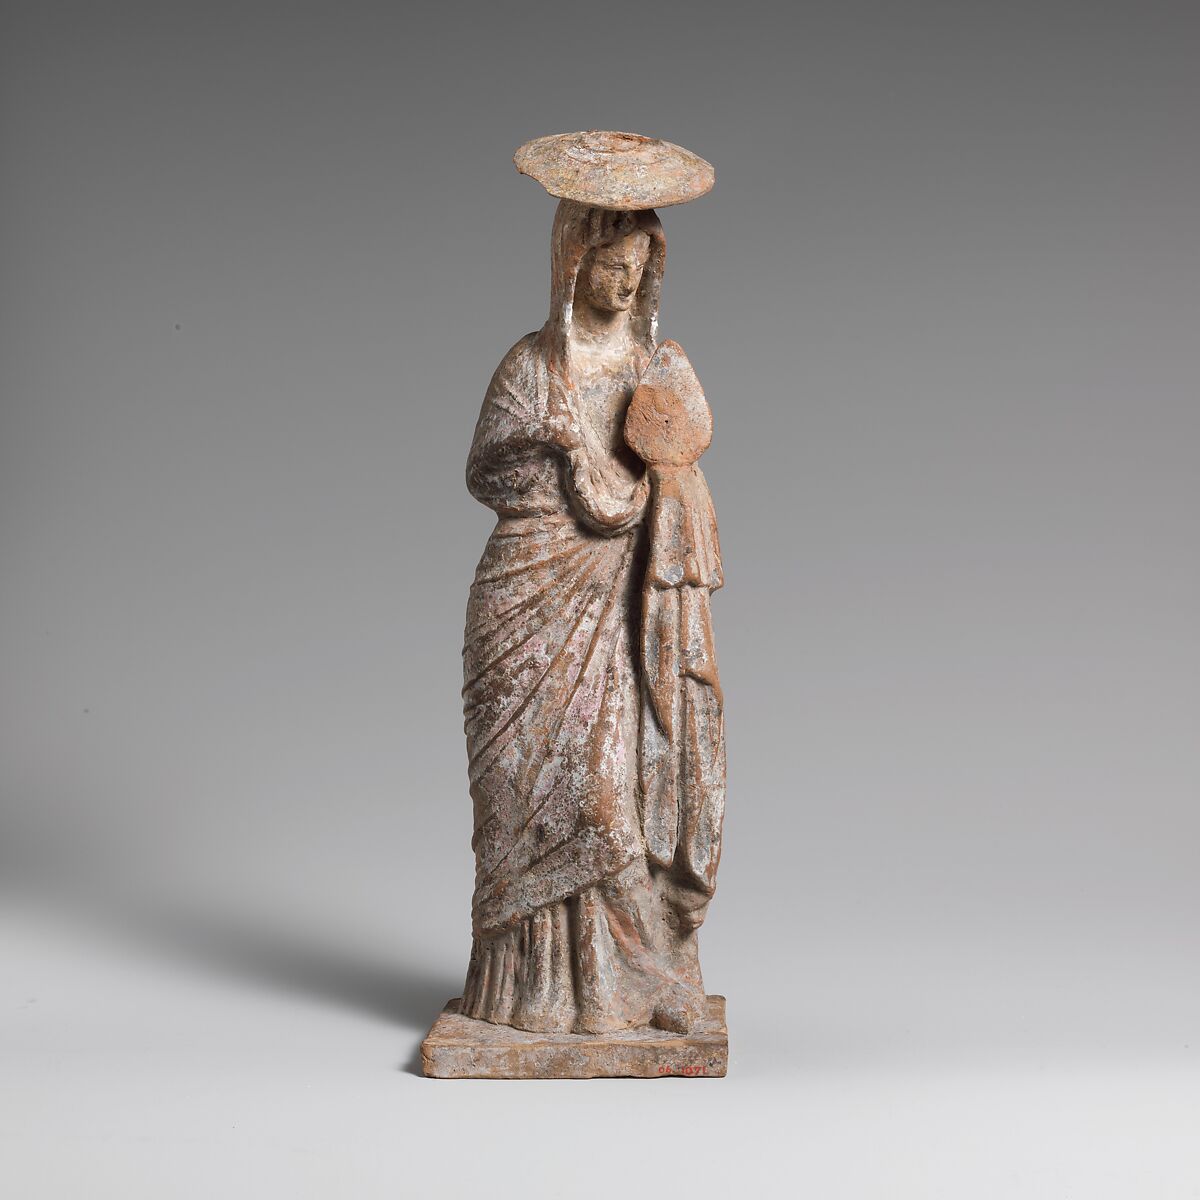 Terracotta statuette of a woman wearing a hat and holding a fan, Terracotta, Greek, Boeotian 